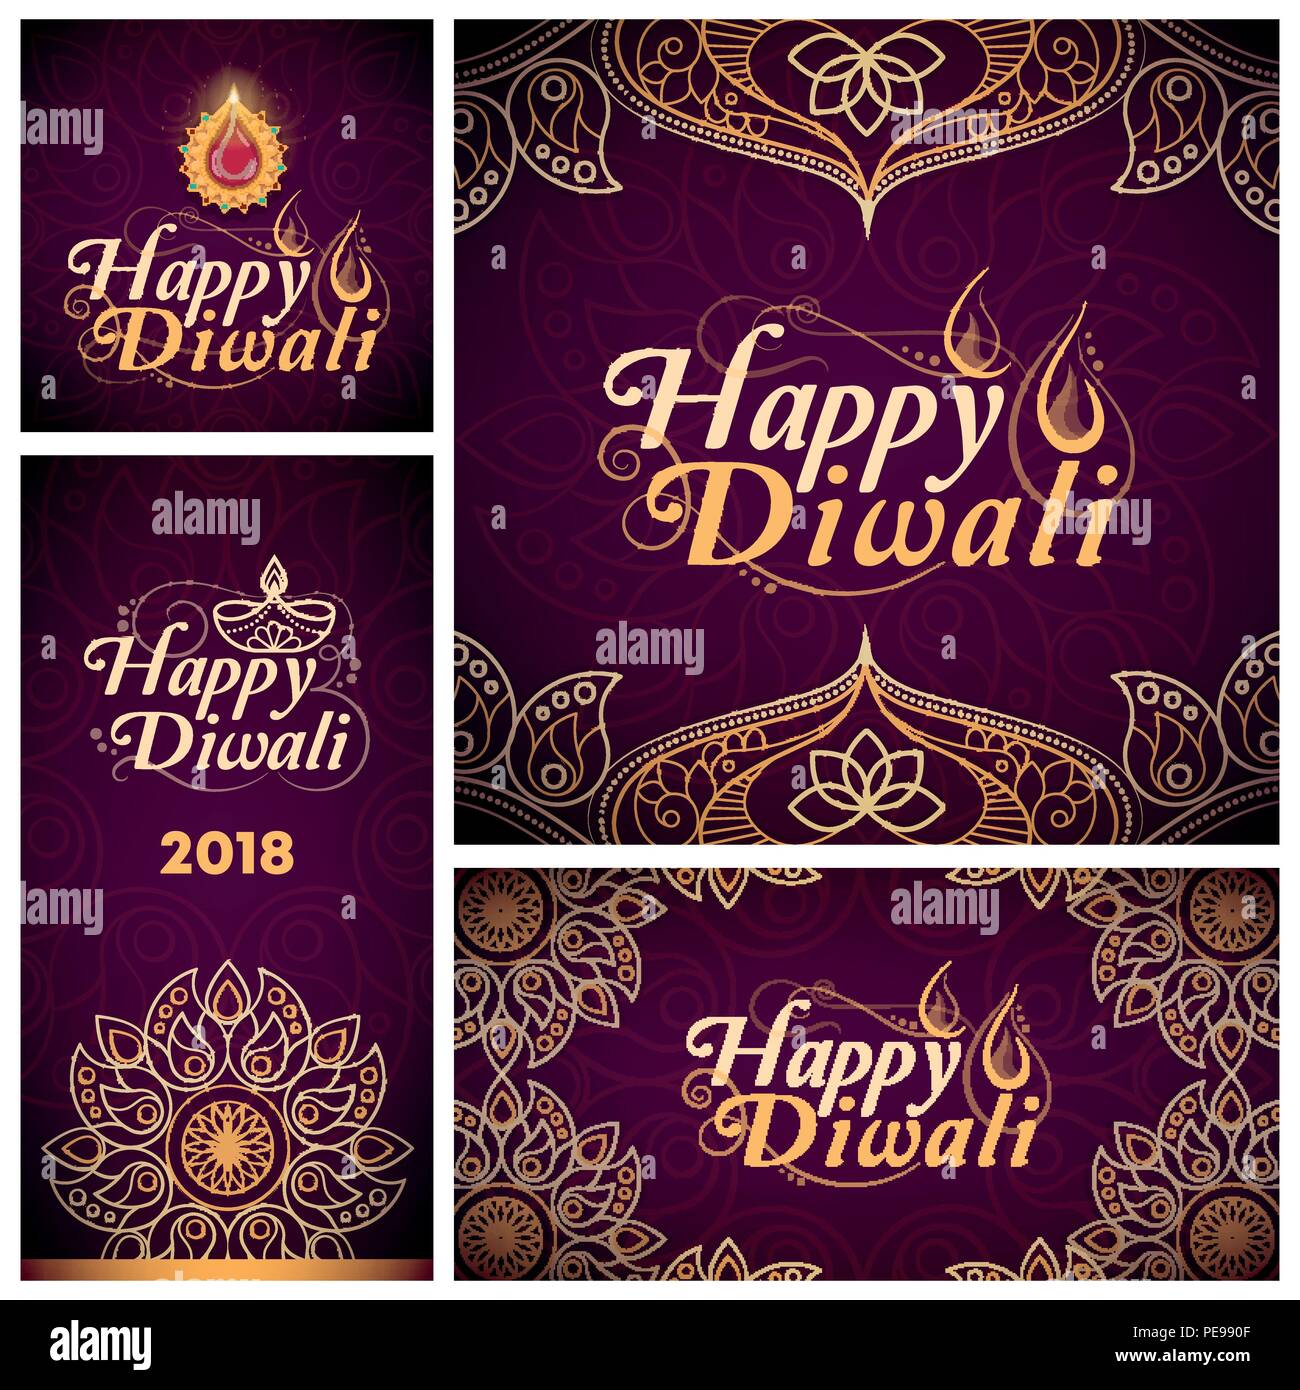 Satz von Happy Diwali Karten und Banner mit Text und Dekorationen Stock Vektor